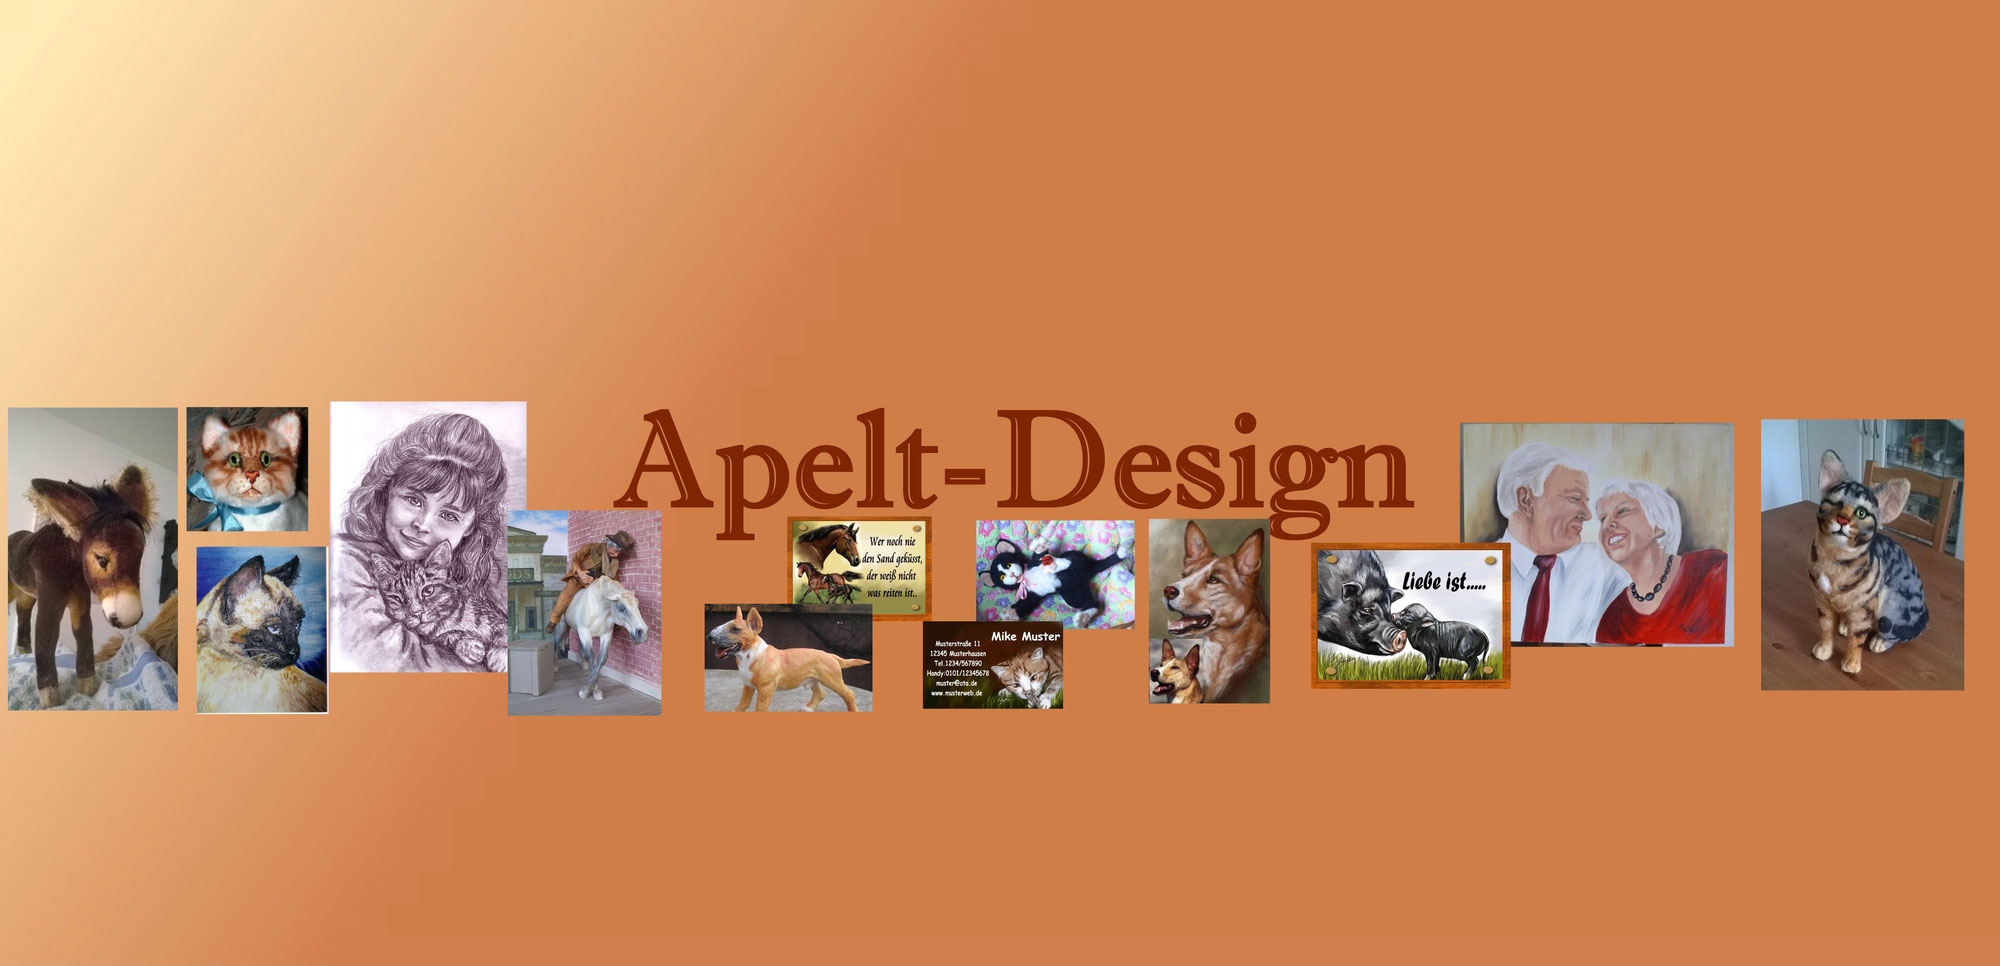 (c) Apelt-design.de